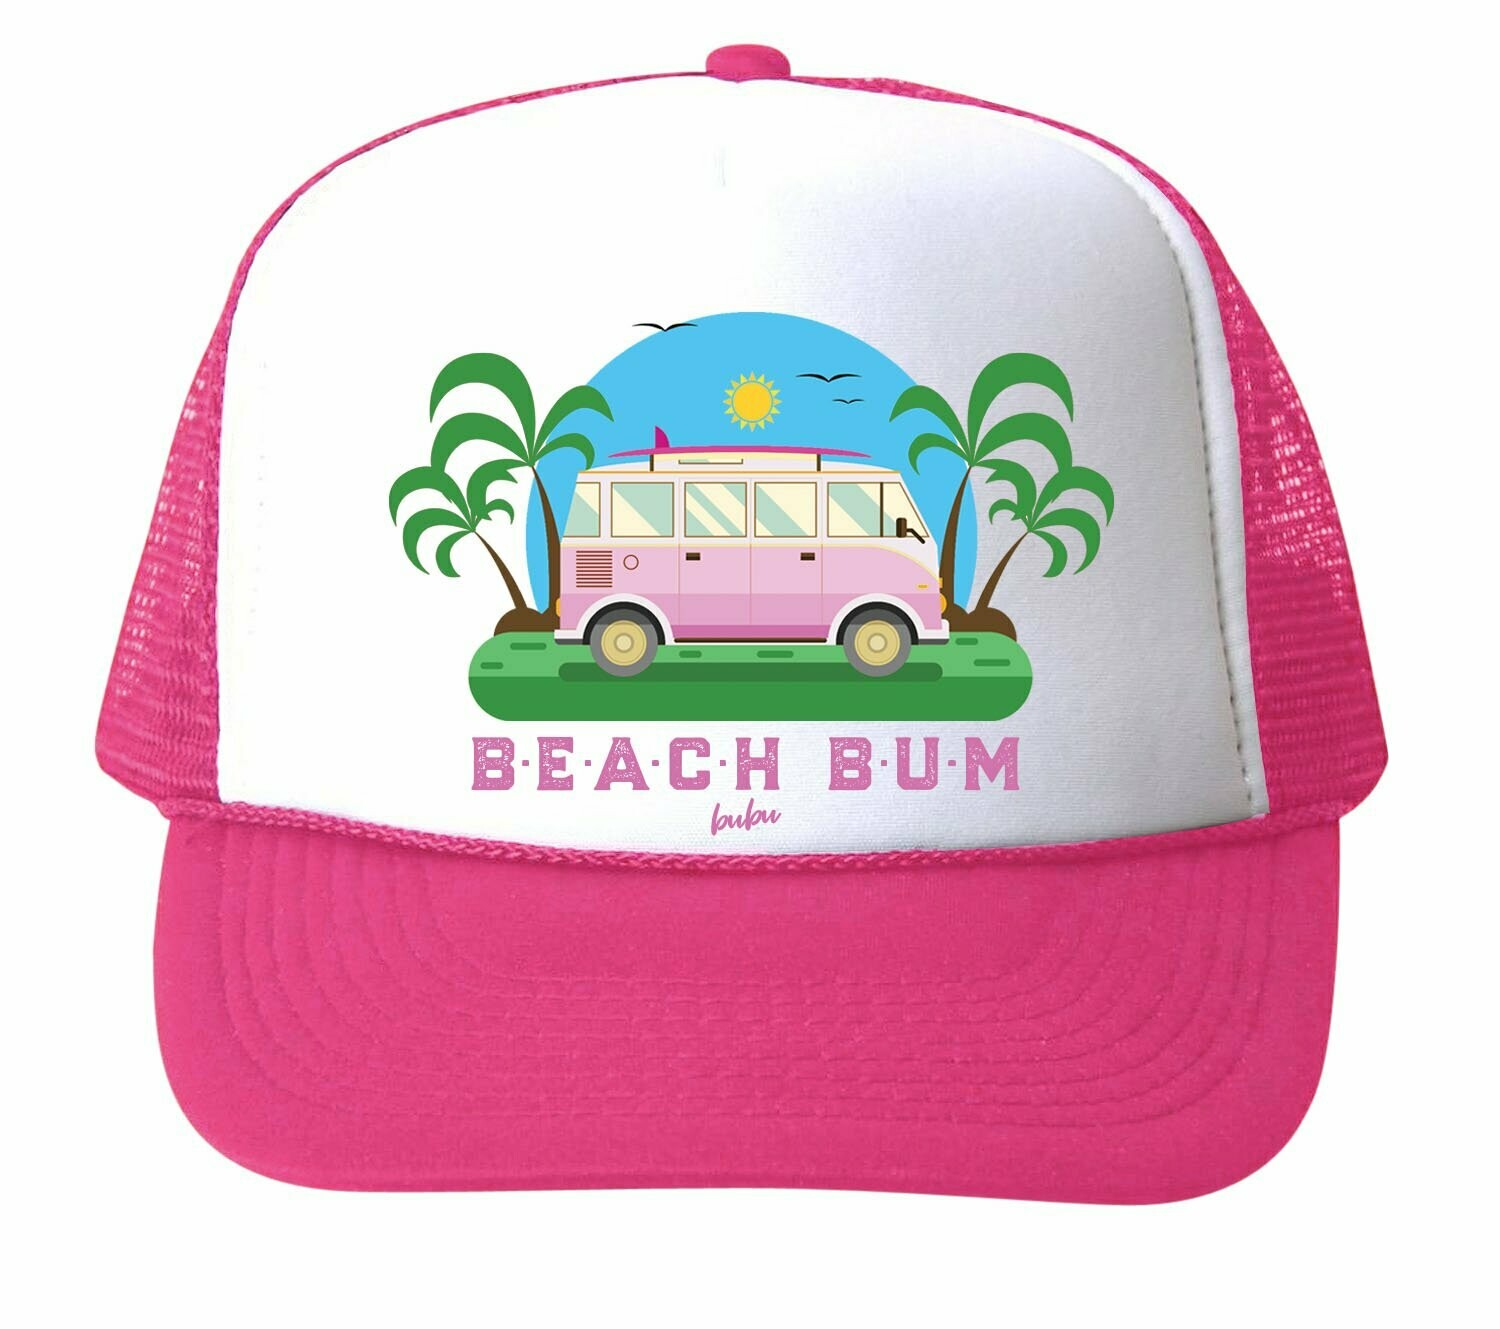 Bubu "Beach Bum" Trucker Hat - Pink